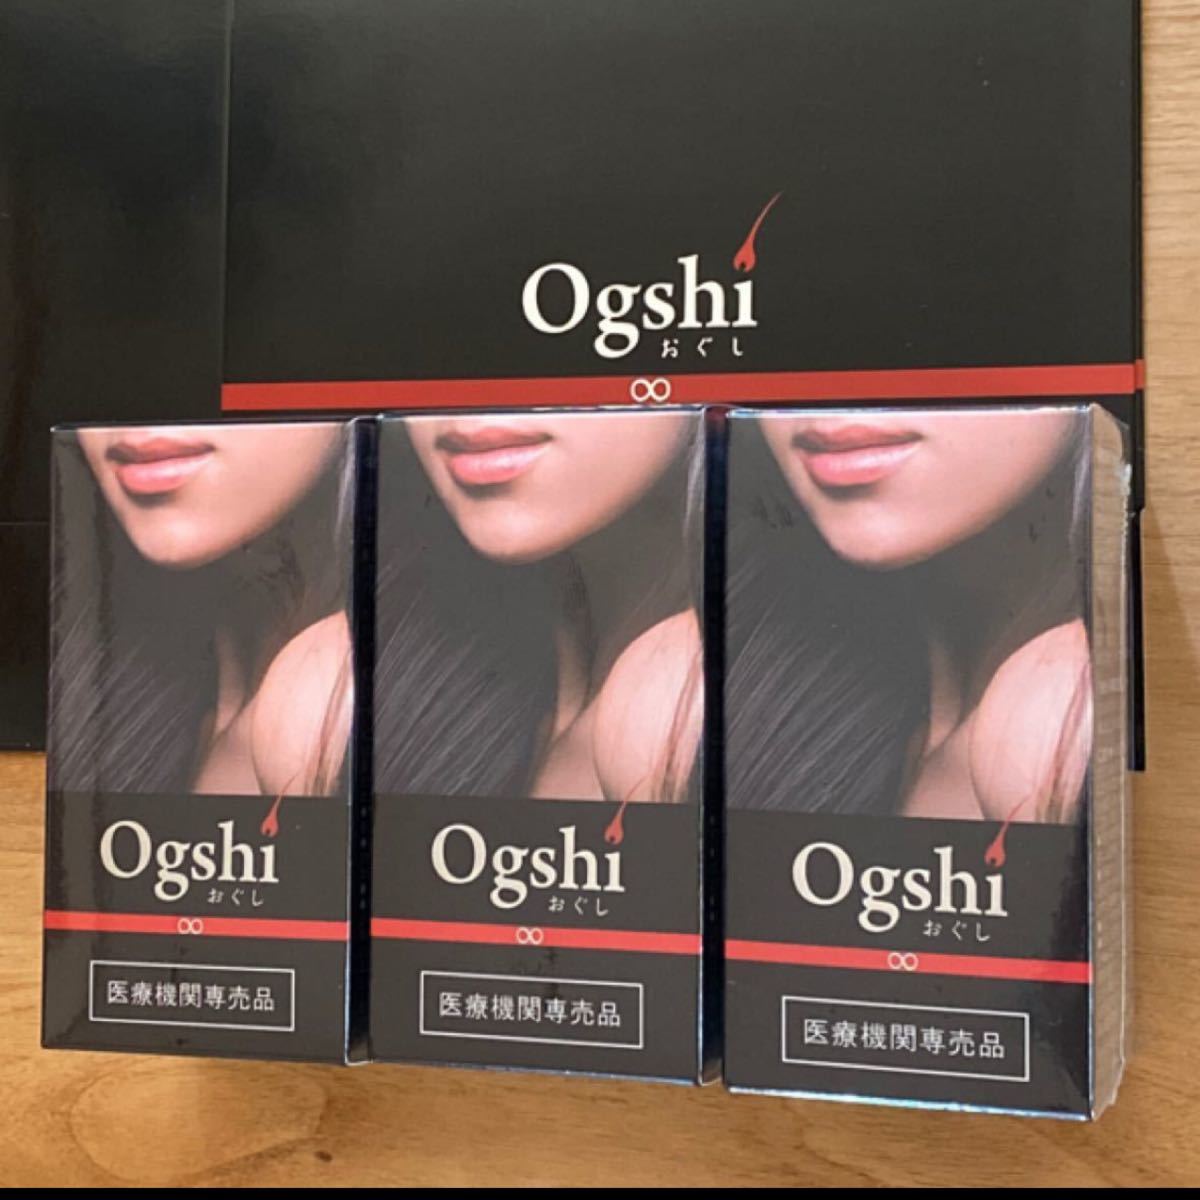 新品 未使用 ogshi おぐし サプリ 3個セット コスメ・香水・美容